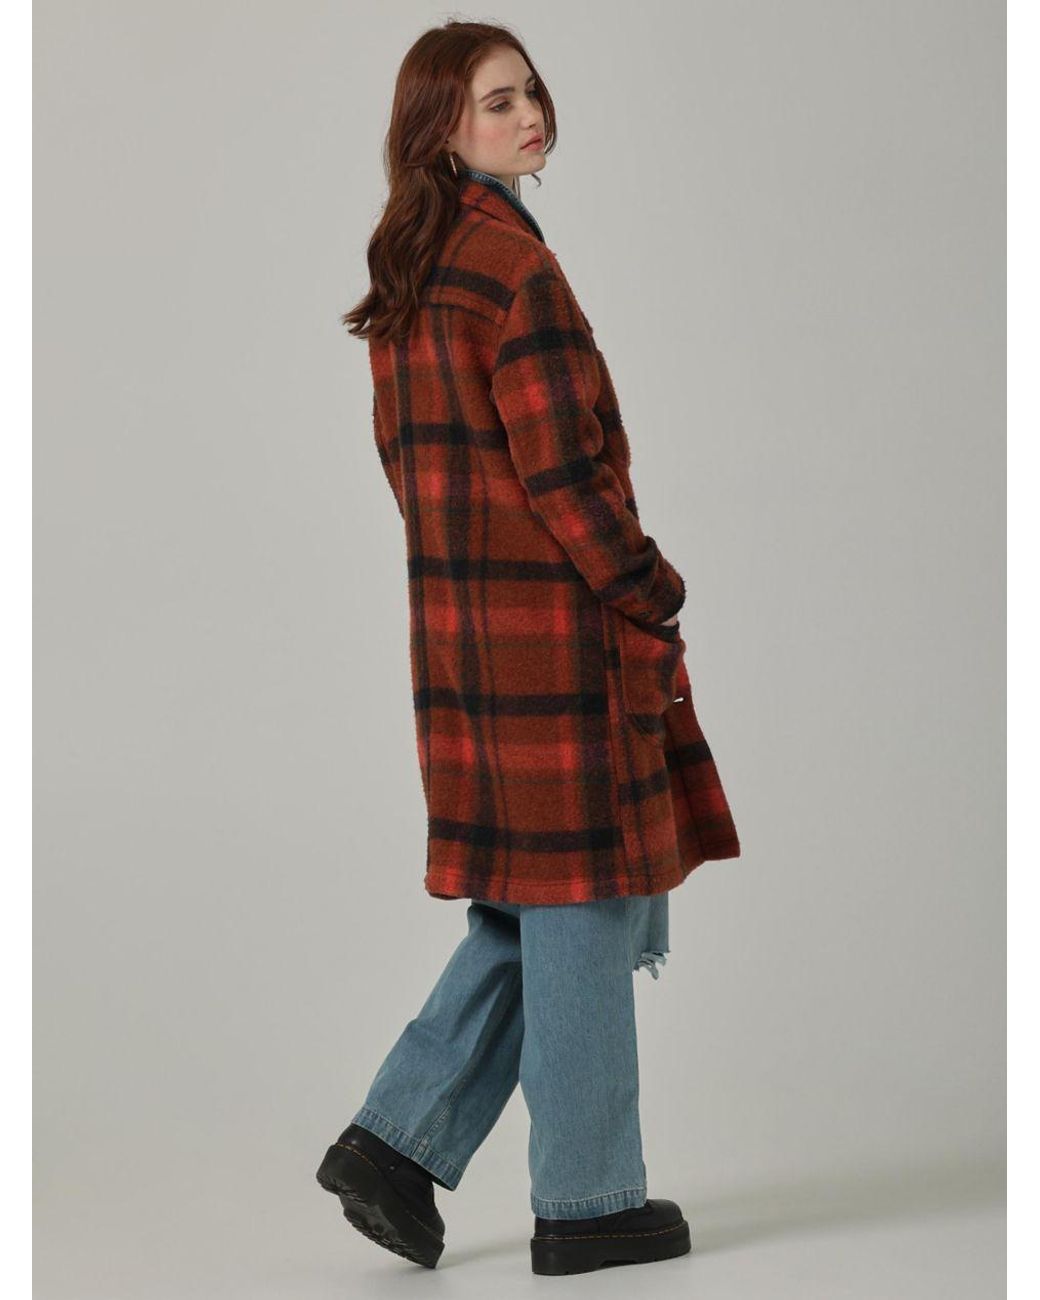 Women's Lee x Daydreamer Workwear Oversized Chore Jacket